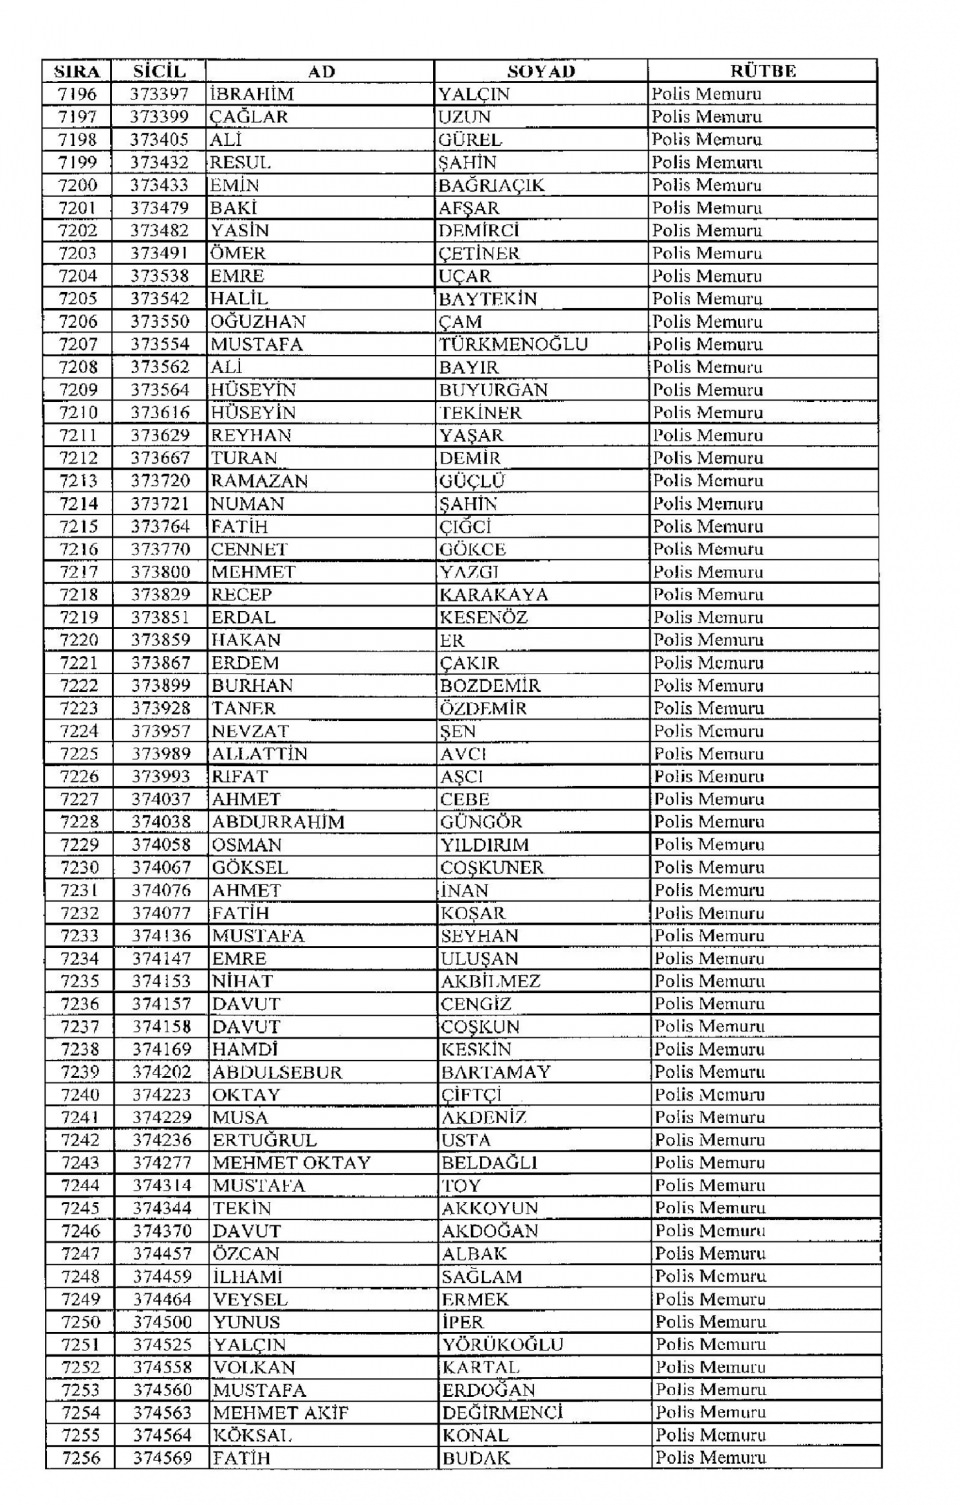 Kamudan ihraç edilenlerin isimleri 177